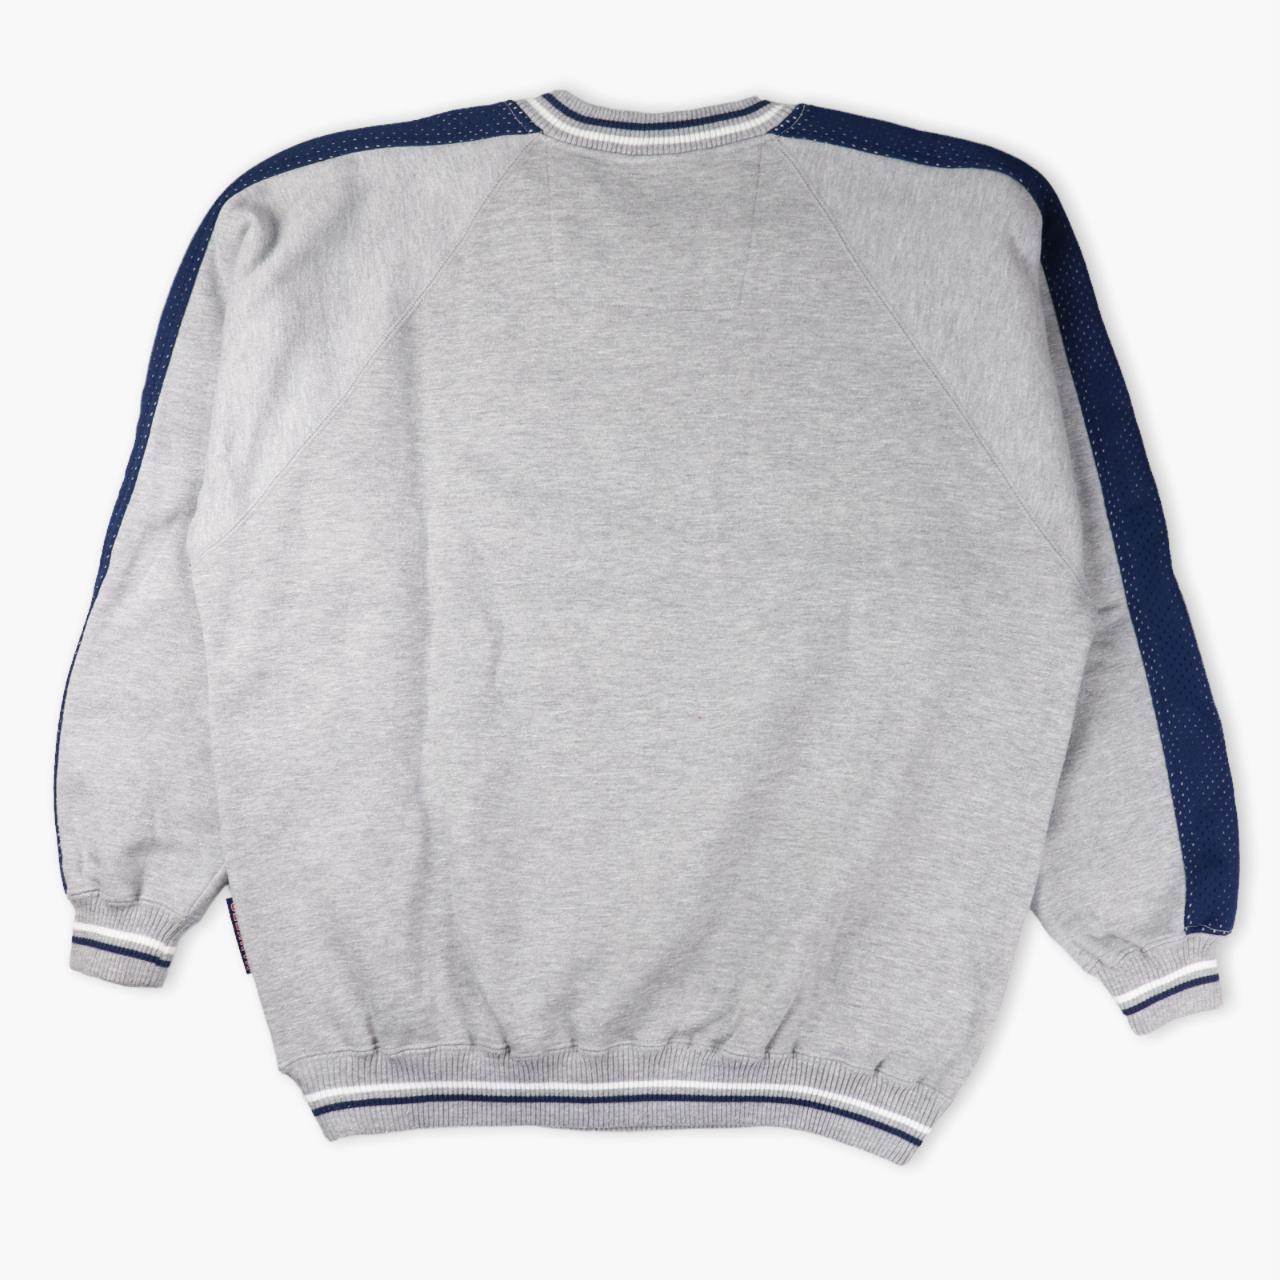 Men's Grey and Navy Sweatshirt | Depop